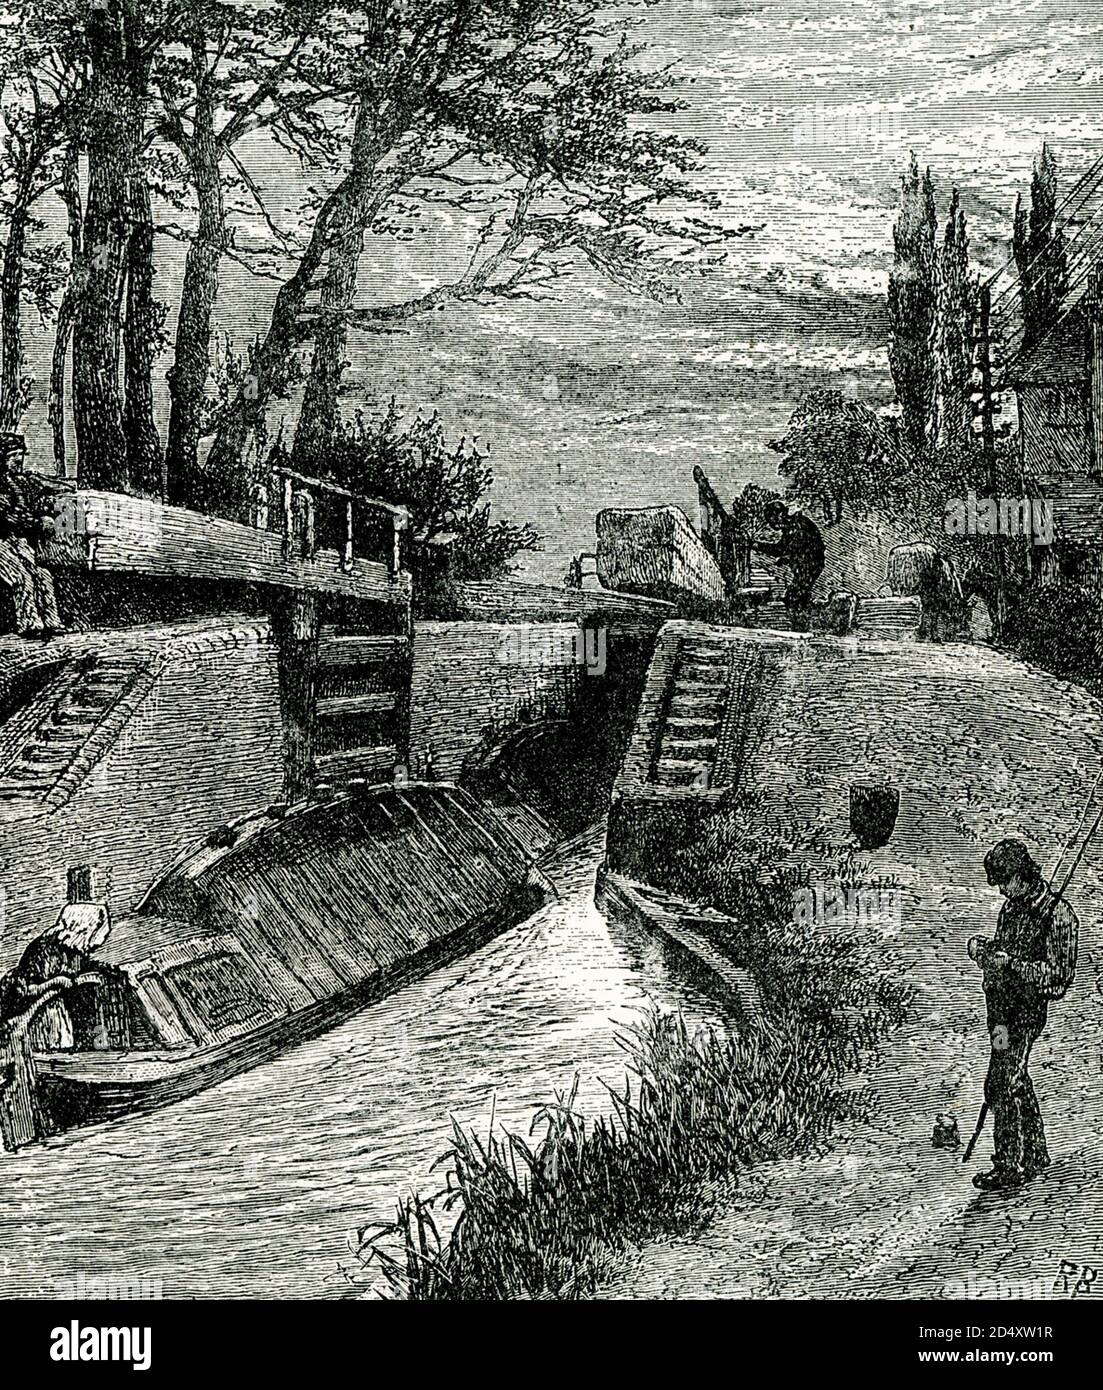 Diese Abbildung trägt den Titel On the Canal at Berkhampstead. Der Grand Union Canal durchschneidet das Herz der Stadt Berkhampsted (auch Berkhampstead genannt) in England. Francis Egerton, Herzog von Bridgewater (der Grachtenduke), Vater der Binnenschifffahrt, lebte in Ashridge, in der Nähe von Berkhamsted. In seiner Erinnerung wurde das Nationaldenkmal für das Kanalsystem errichtet, das heute mitten in der Parklandschaft des Ashridge National Trust steht. Der Grand Junction Canal von der Themse bei Brentford nach Berkhamsted wurde 1798 fertiggestellt und ging 1805 bis nach Birmingham. Stockfoto